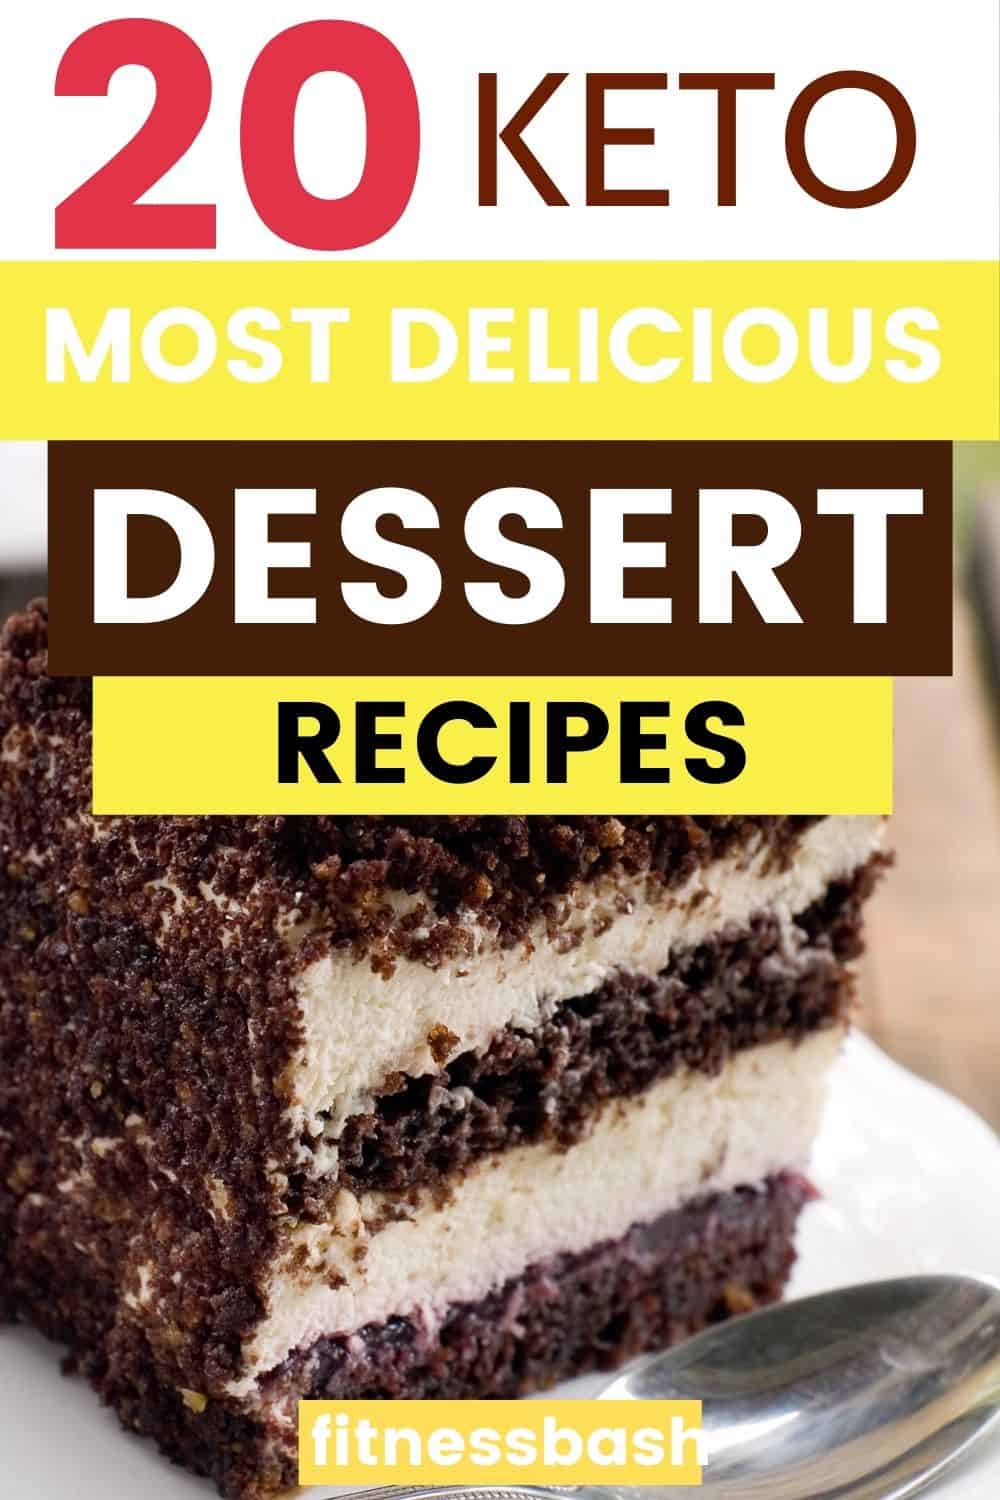 keto dessert recipes